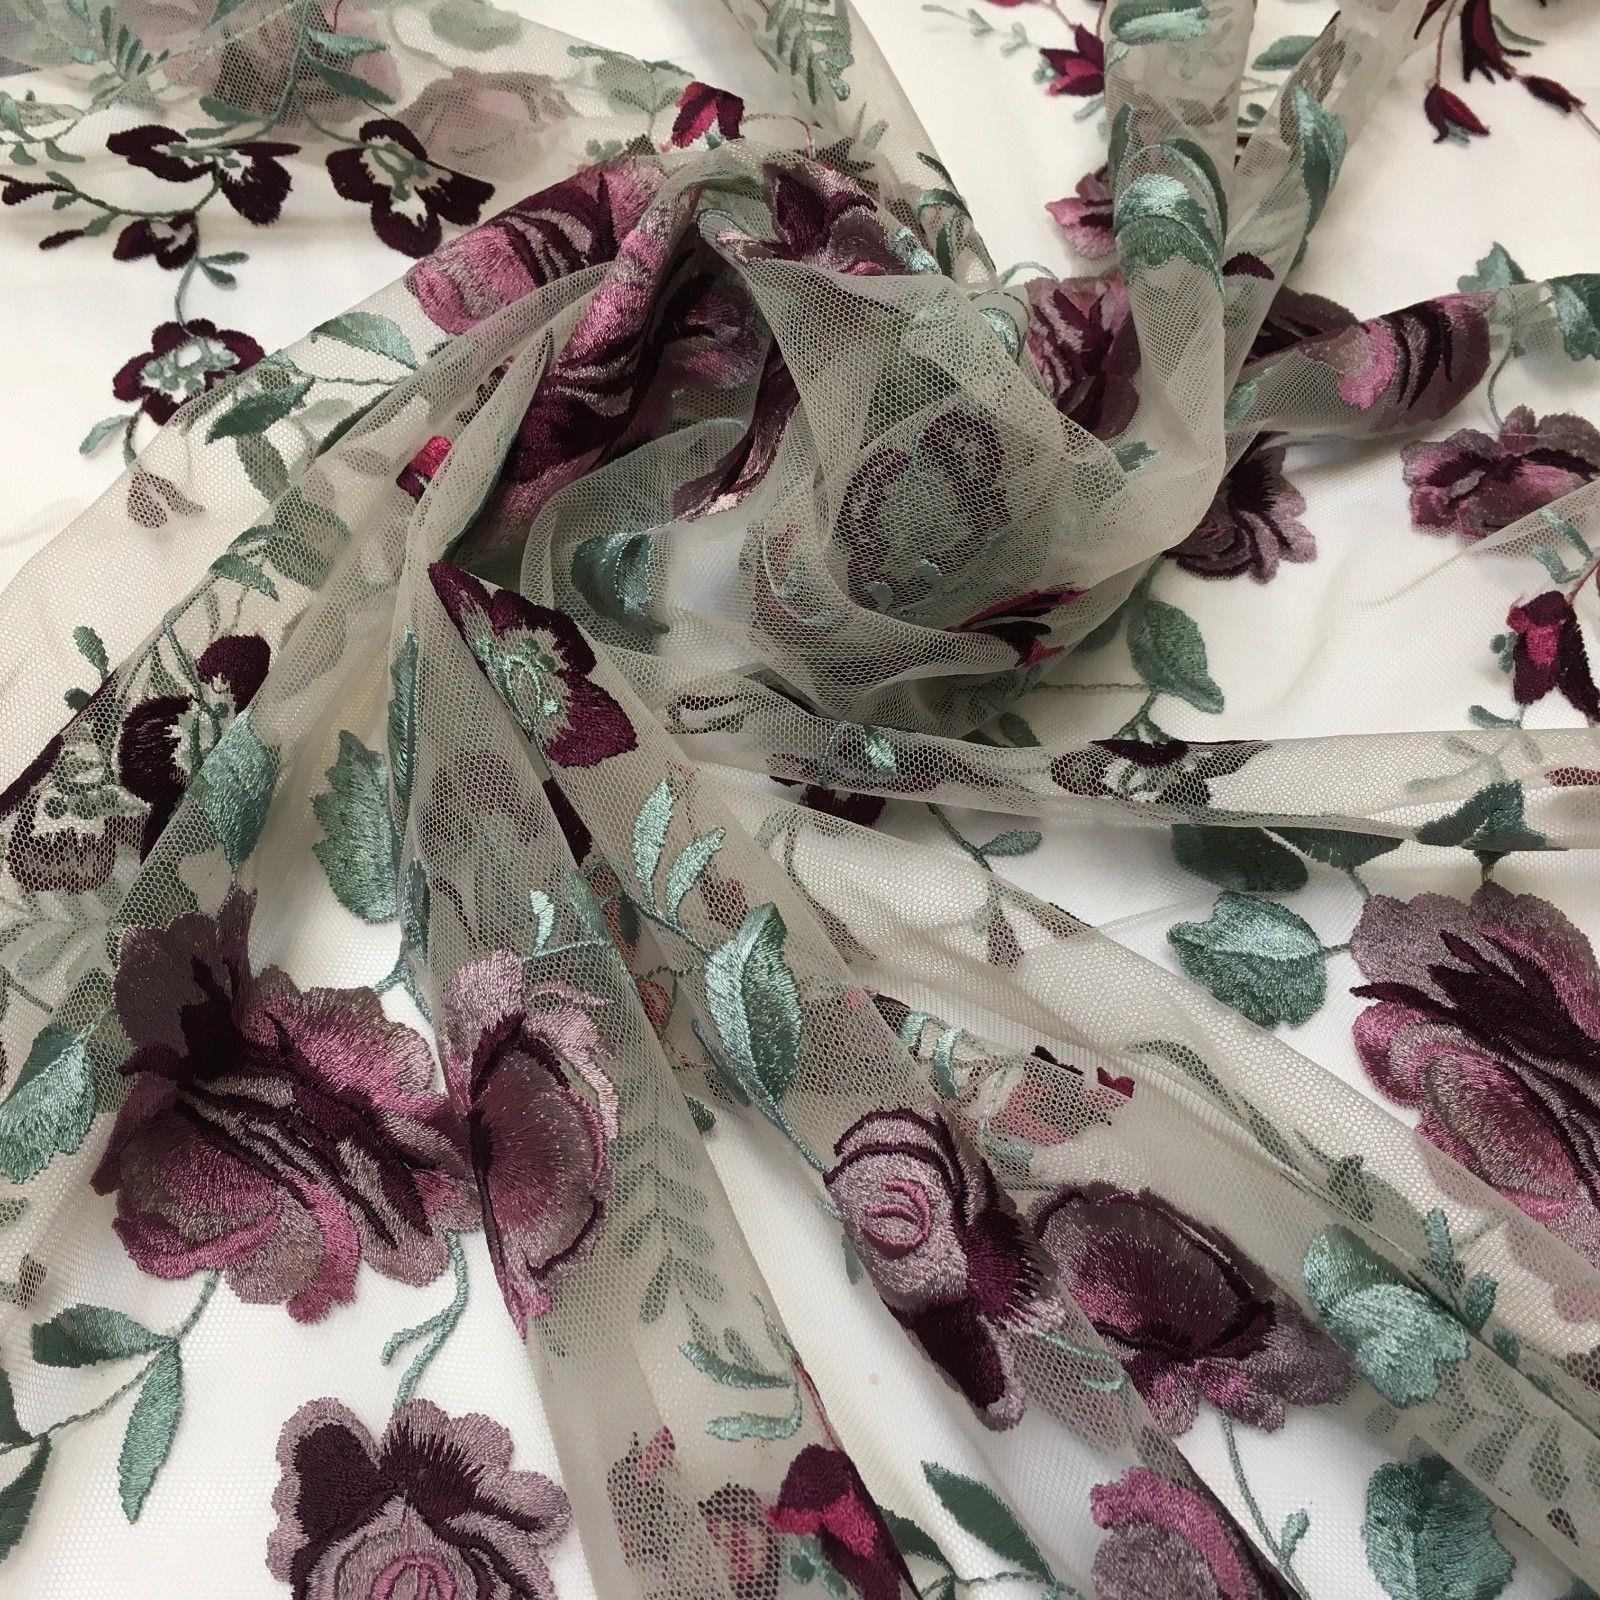 Floral Vintage embroidered elegant wedding dress net fabric  55" Wide MV985 Mtex